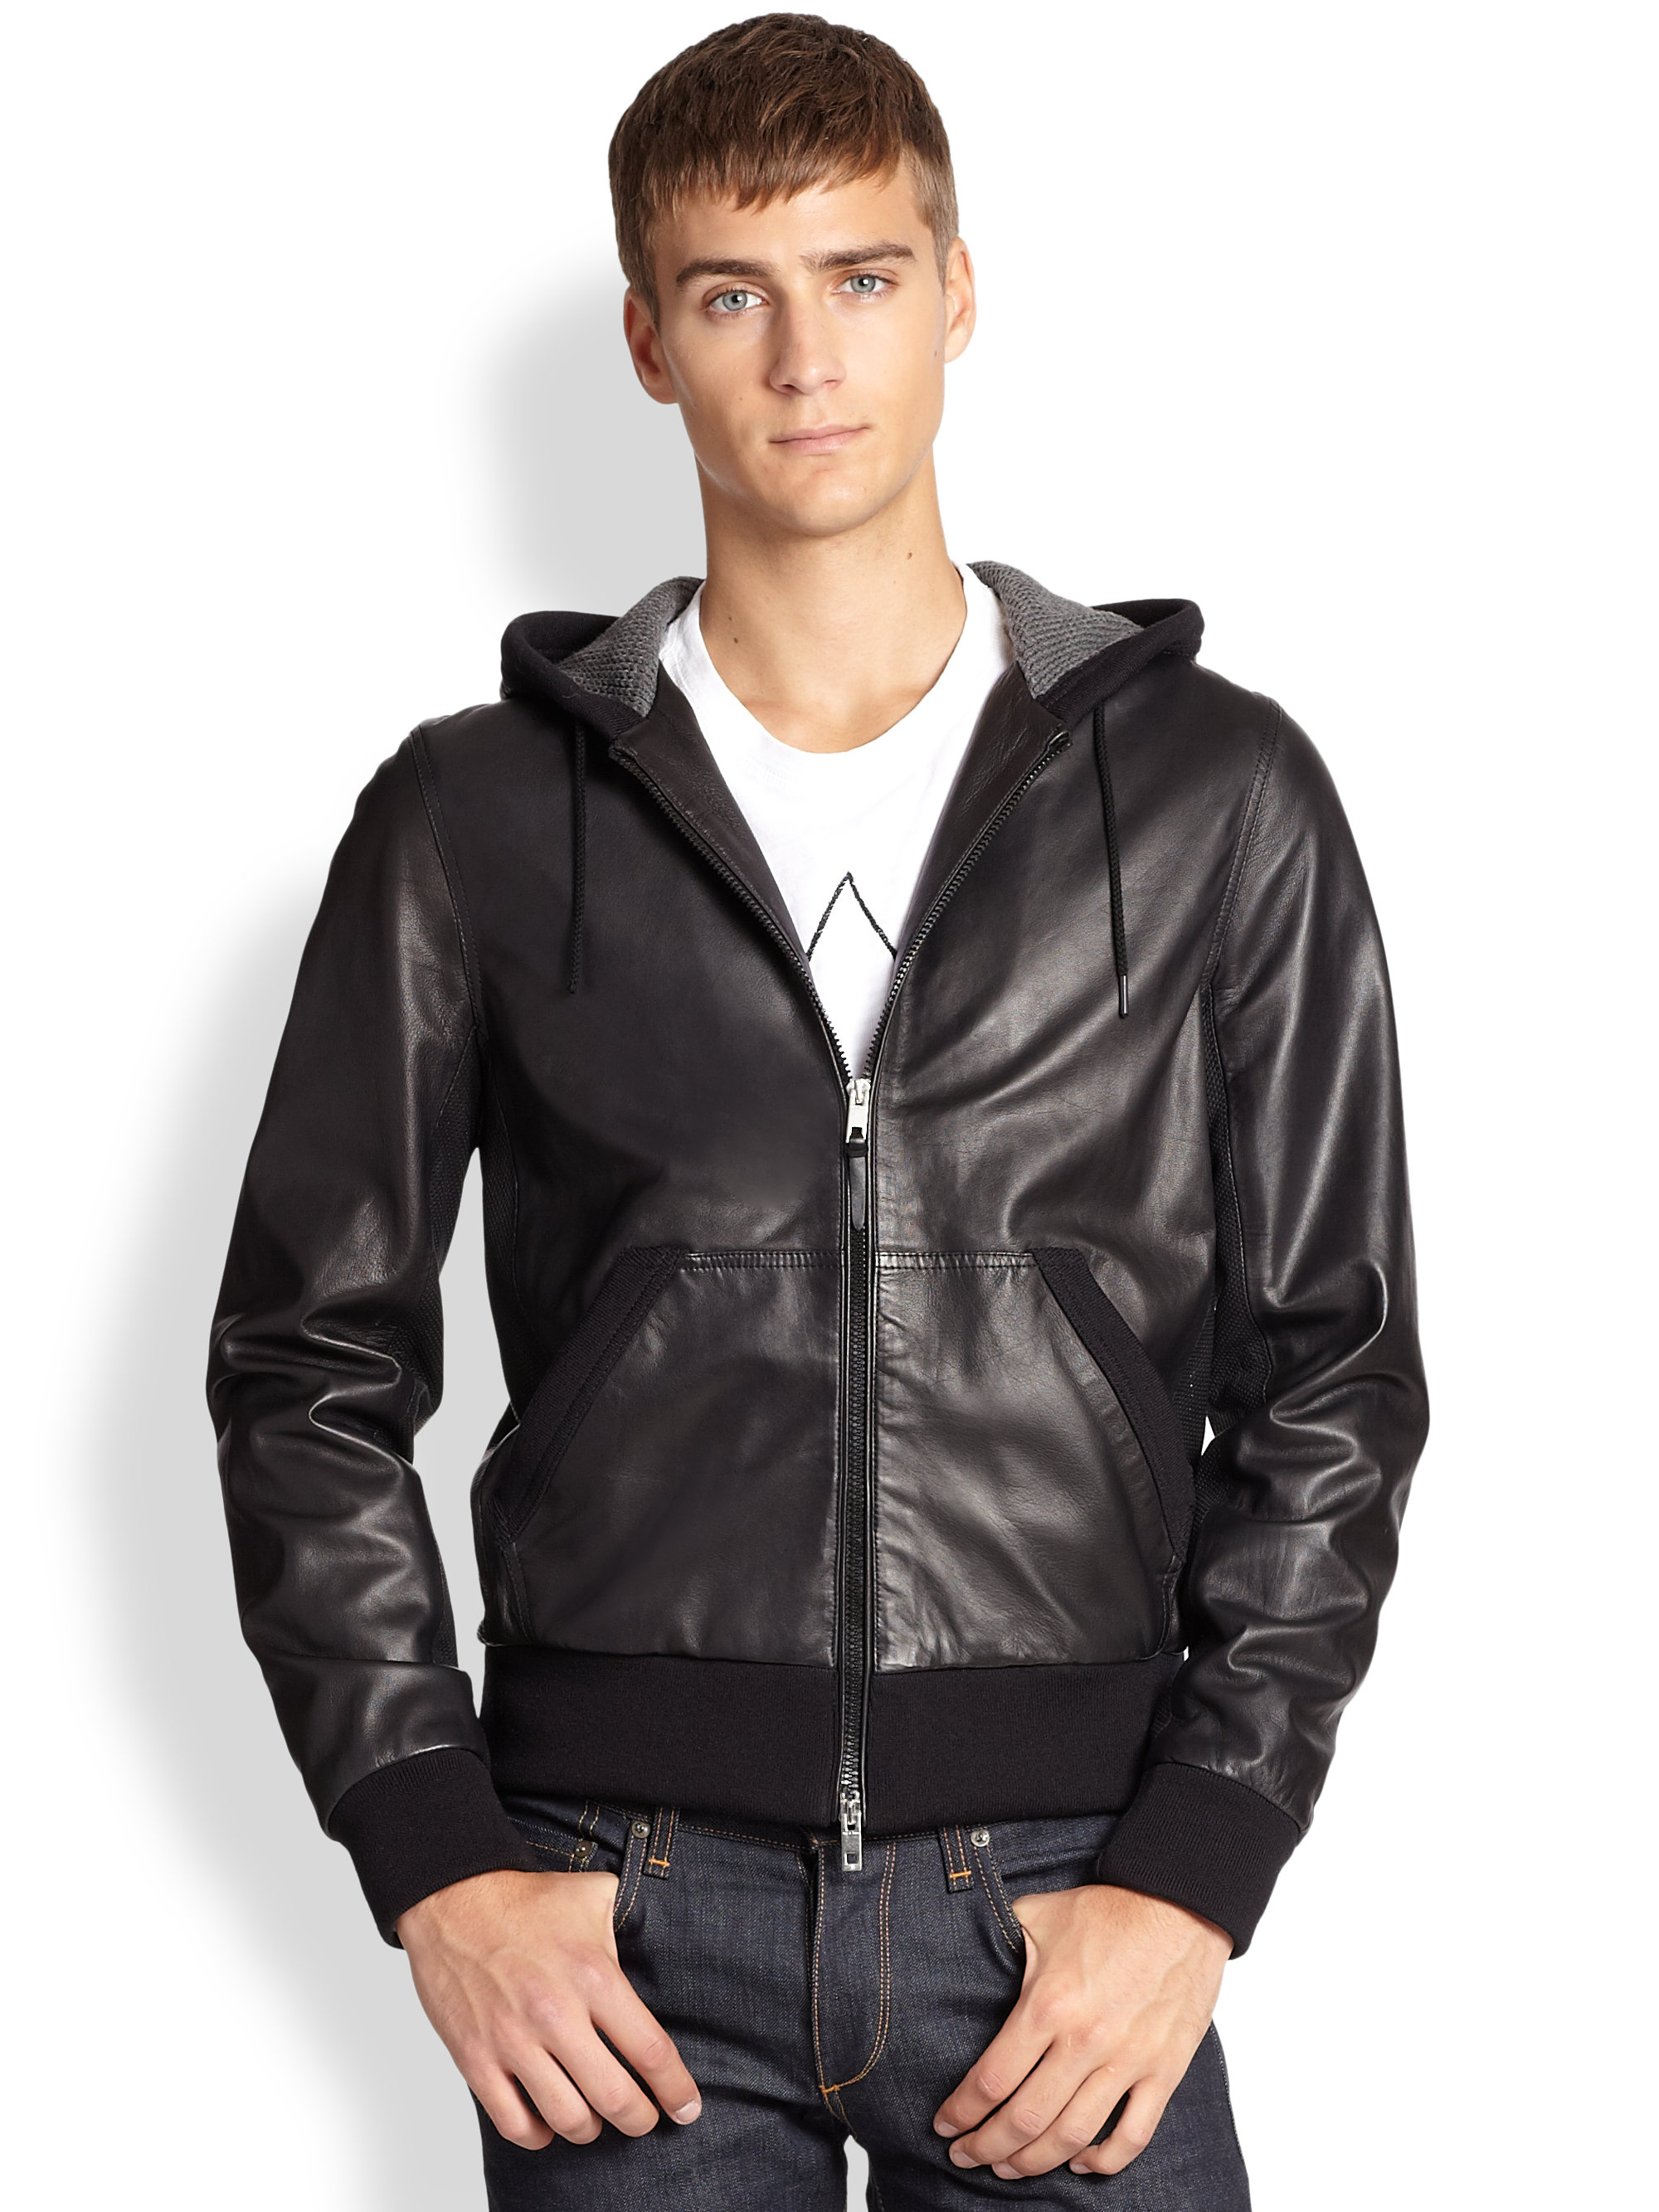 Rag & bone Christopher Leather Hoodie Jacket in Black for Men | Lyst